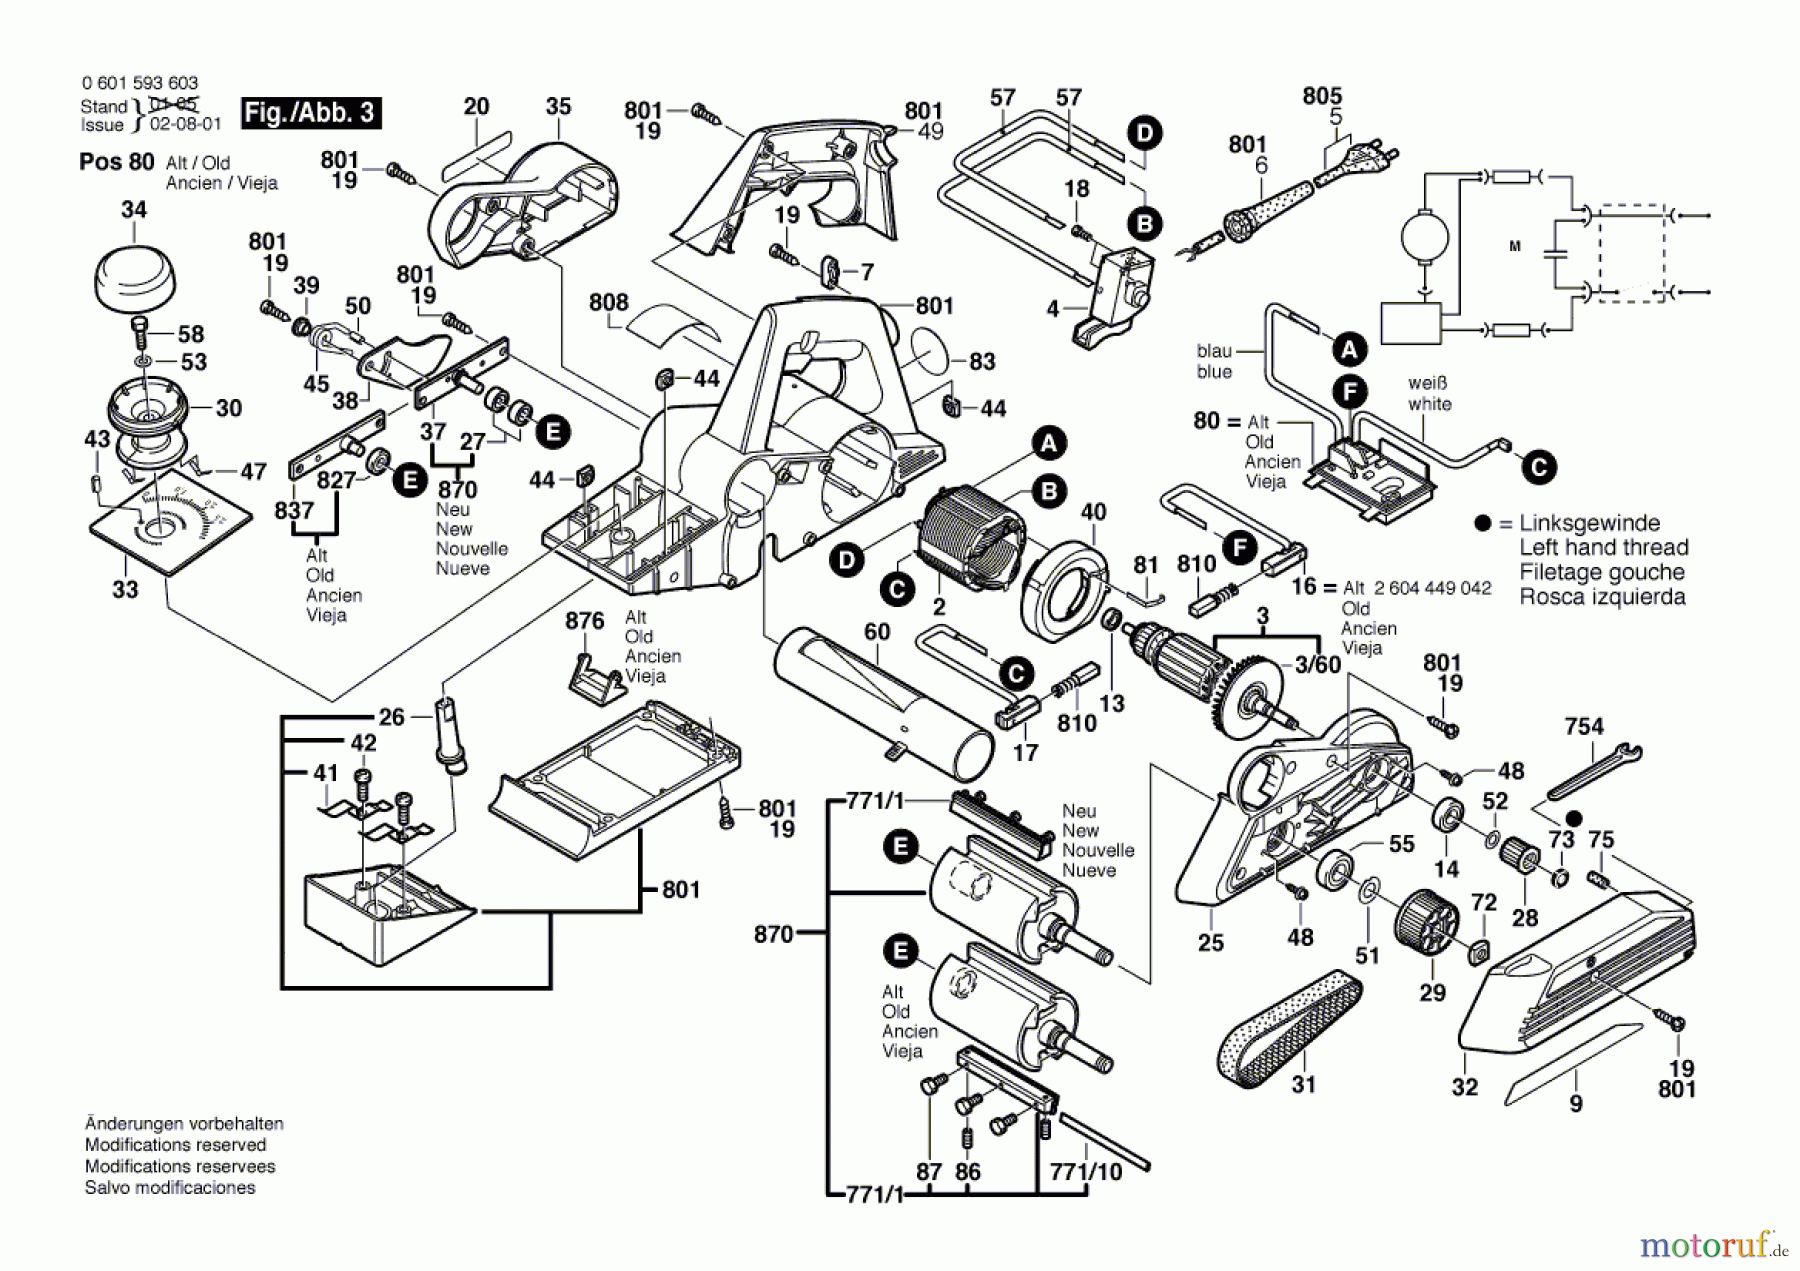  Bosch Werkzeug Handhobel GHO 36-82 C Seite 3